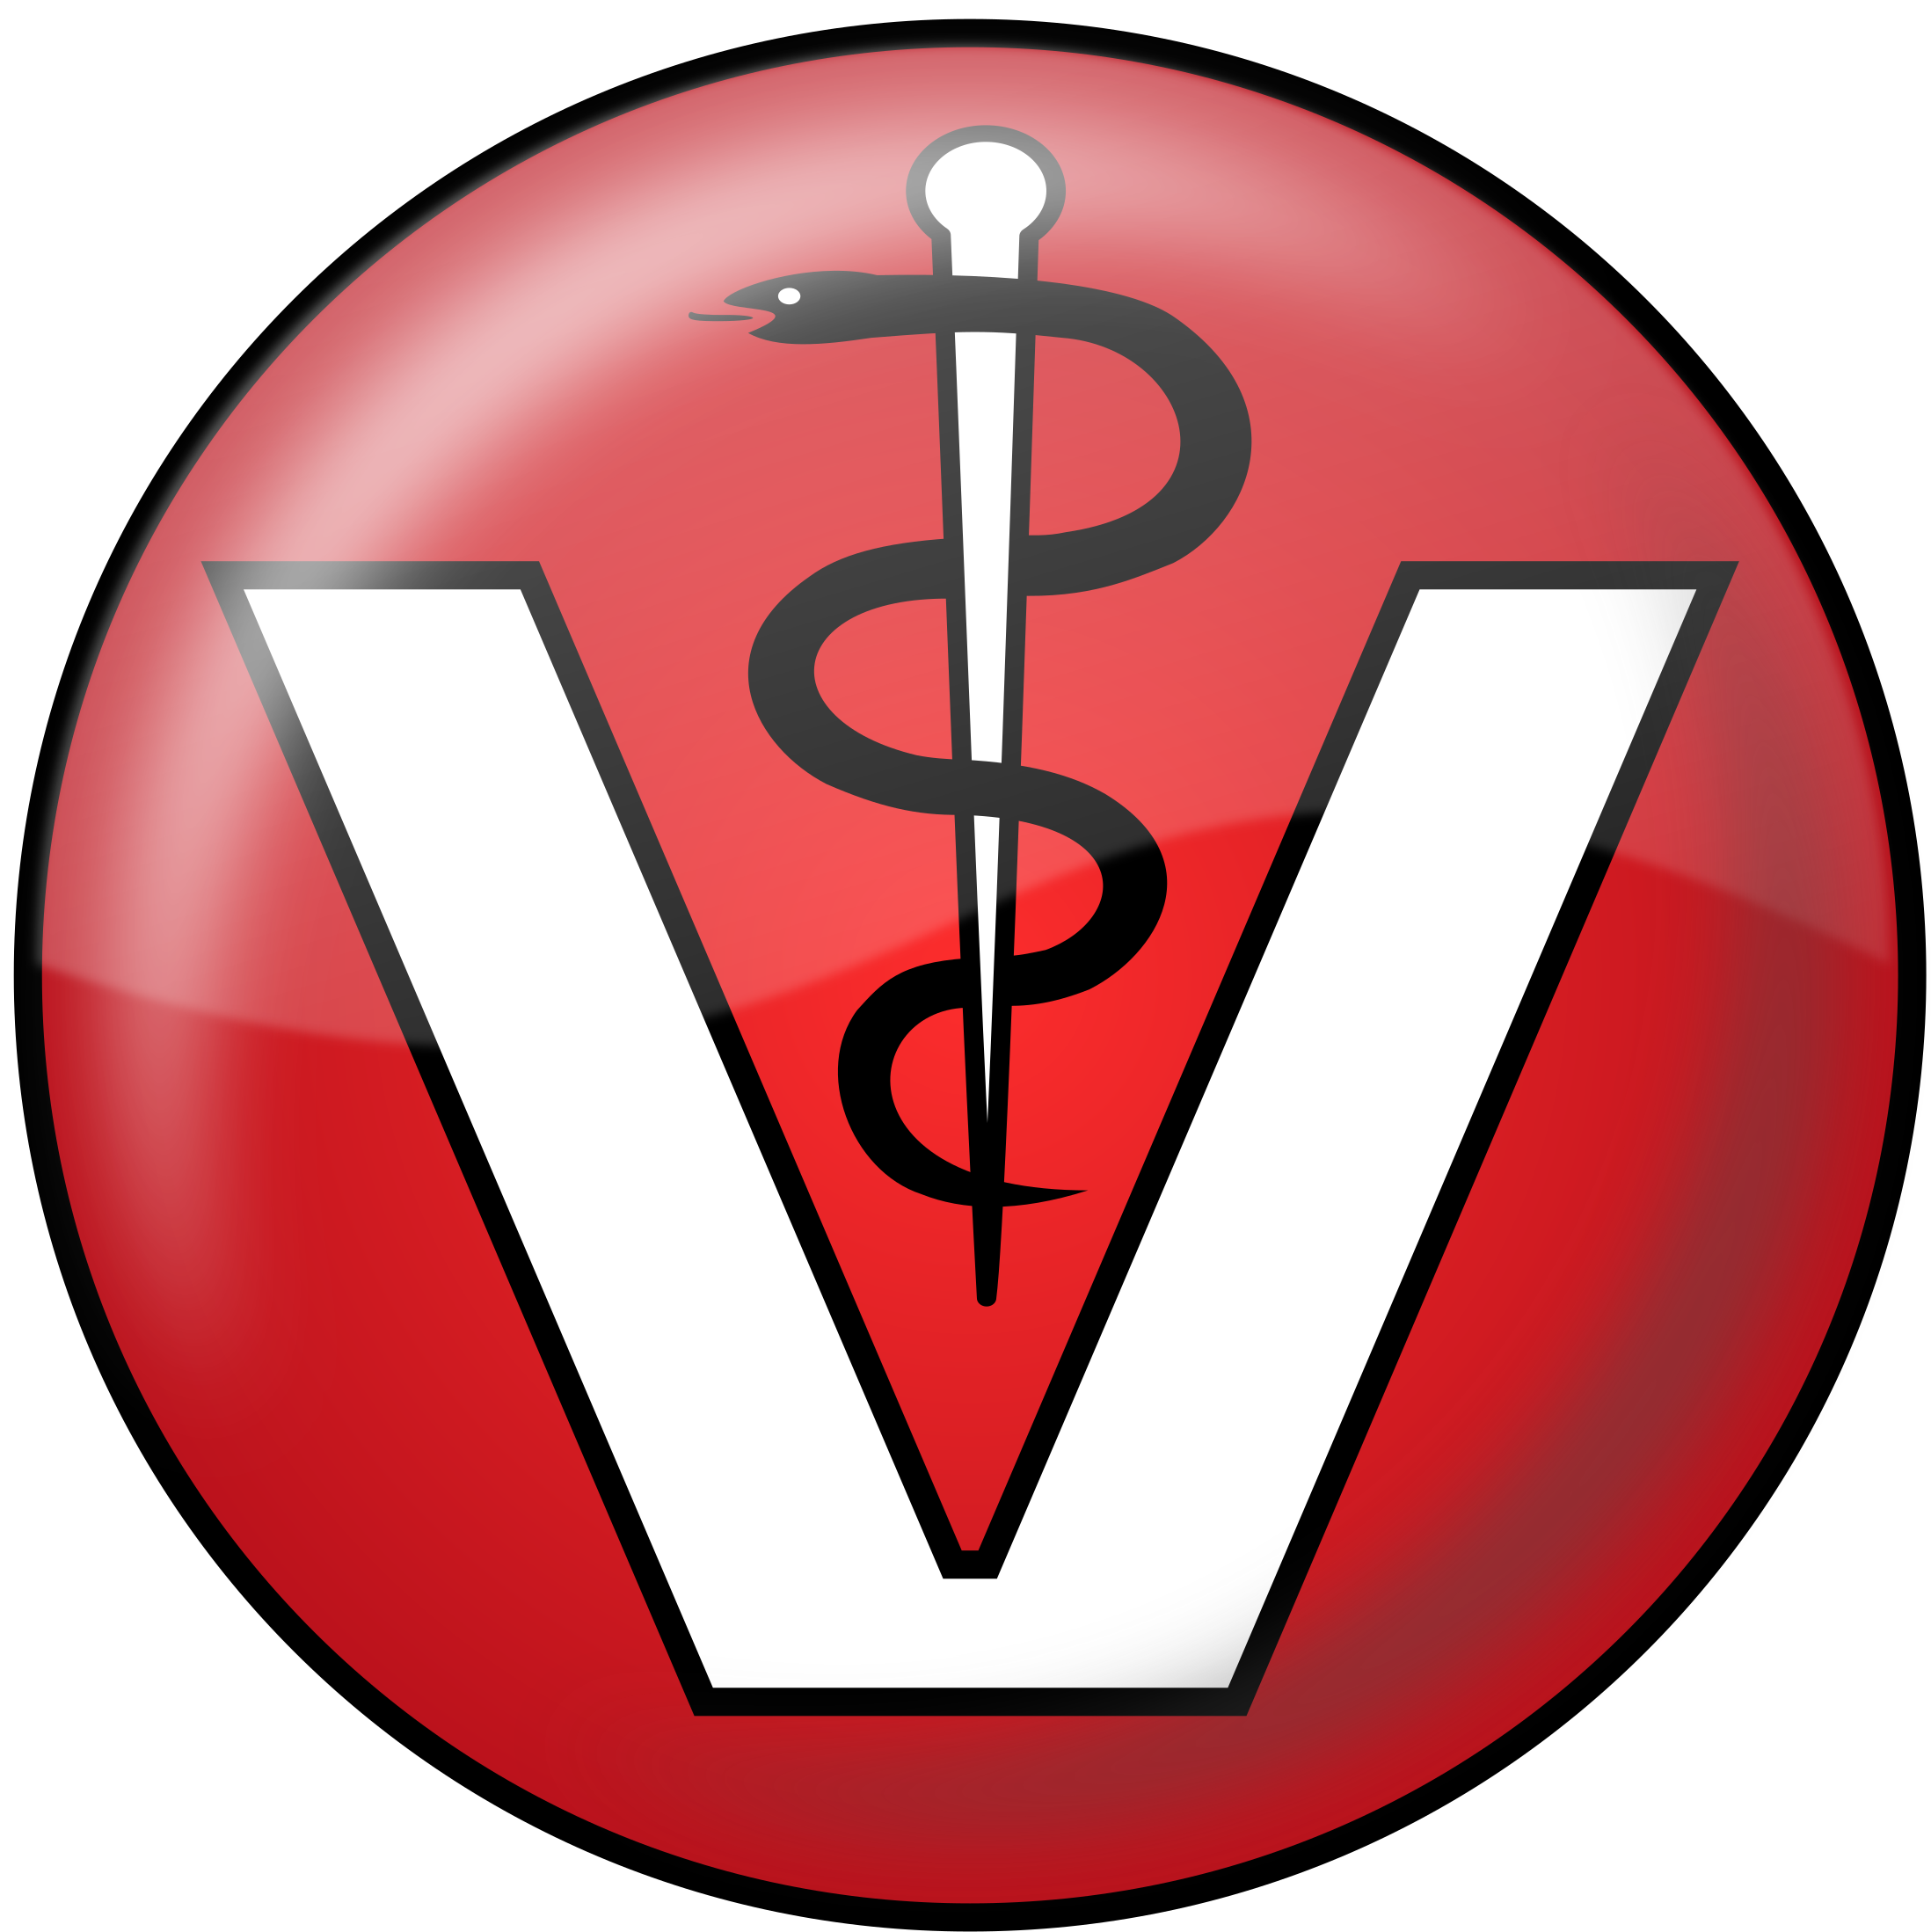 Logo Clipart Veterinary - Veterinary Physician (2400x2400)